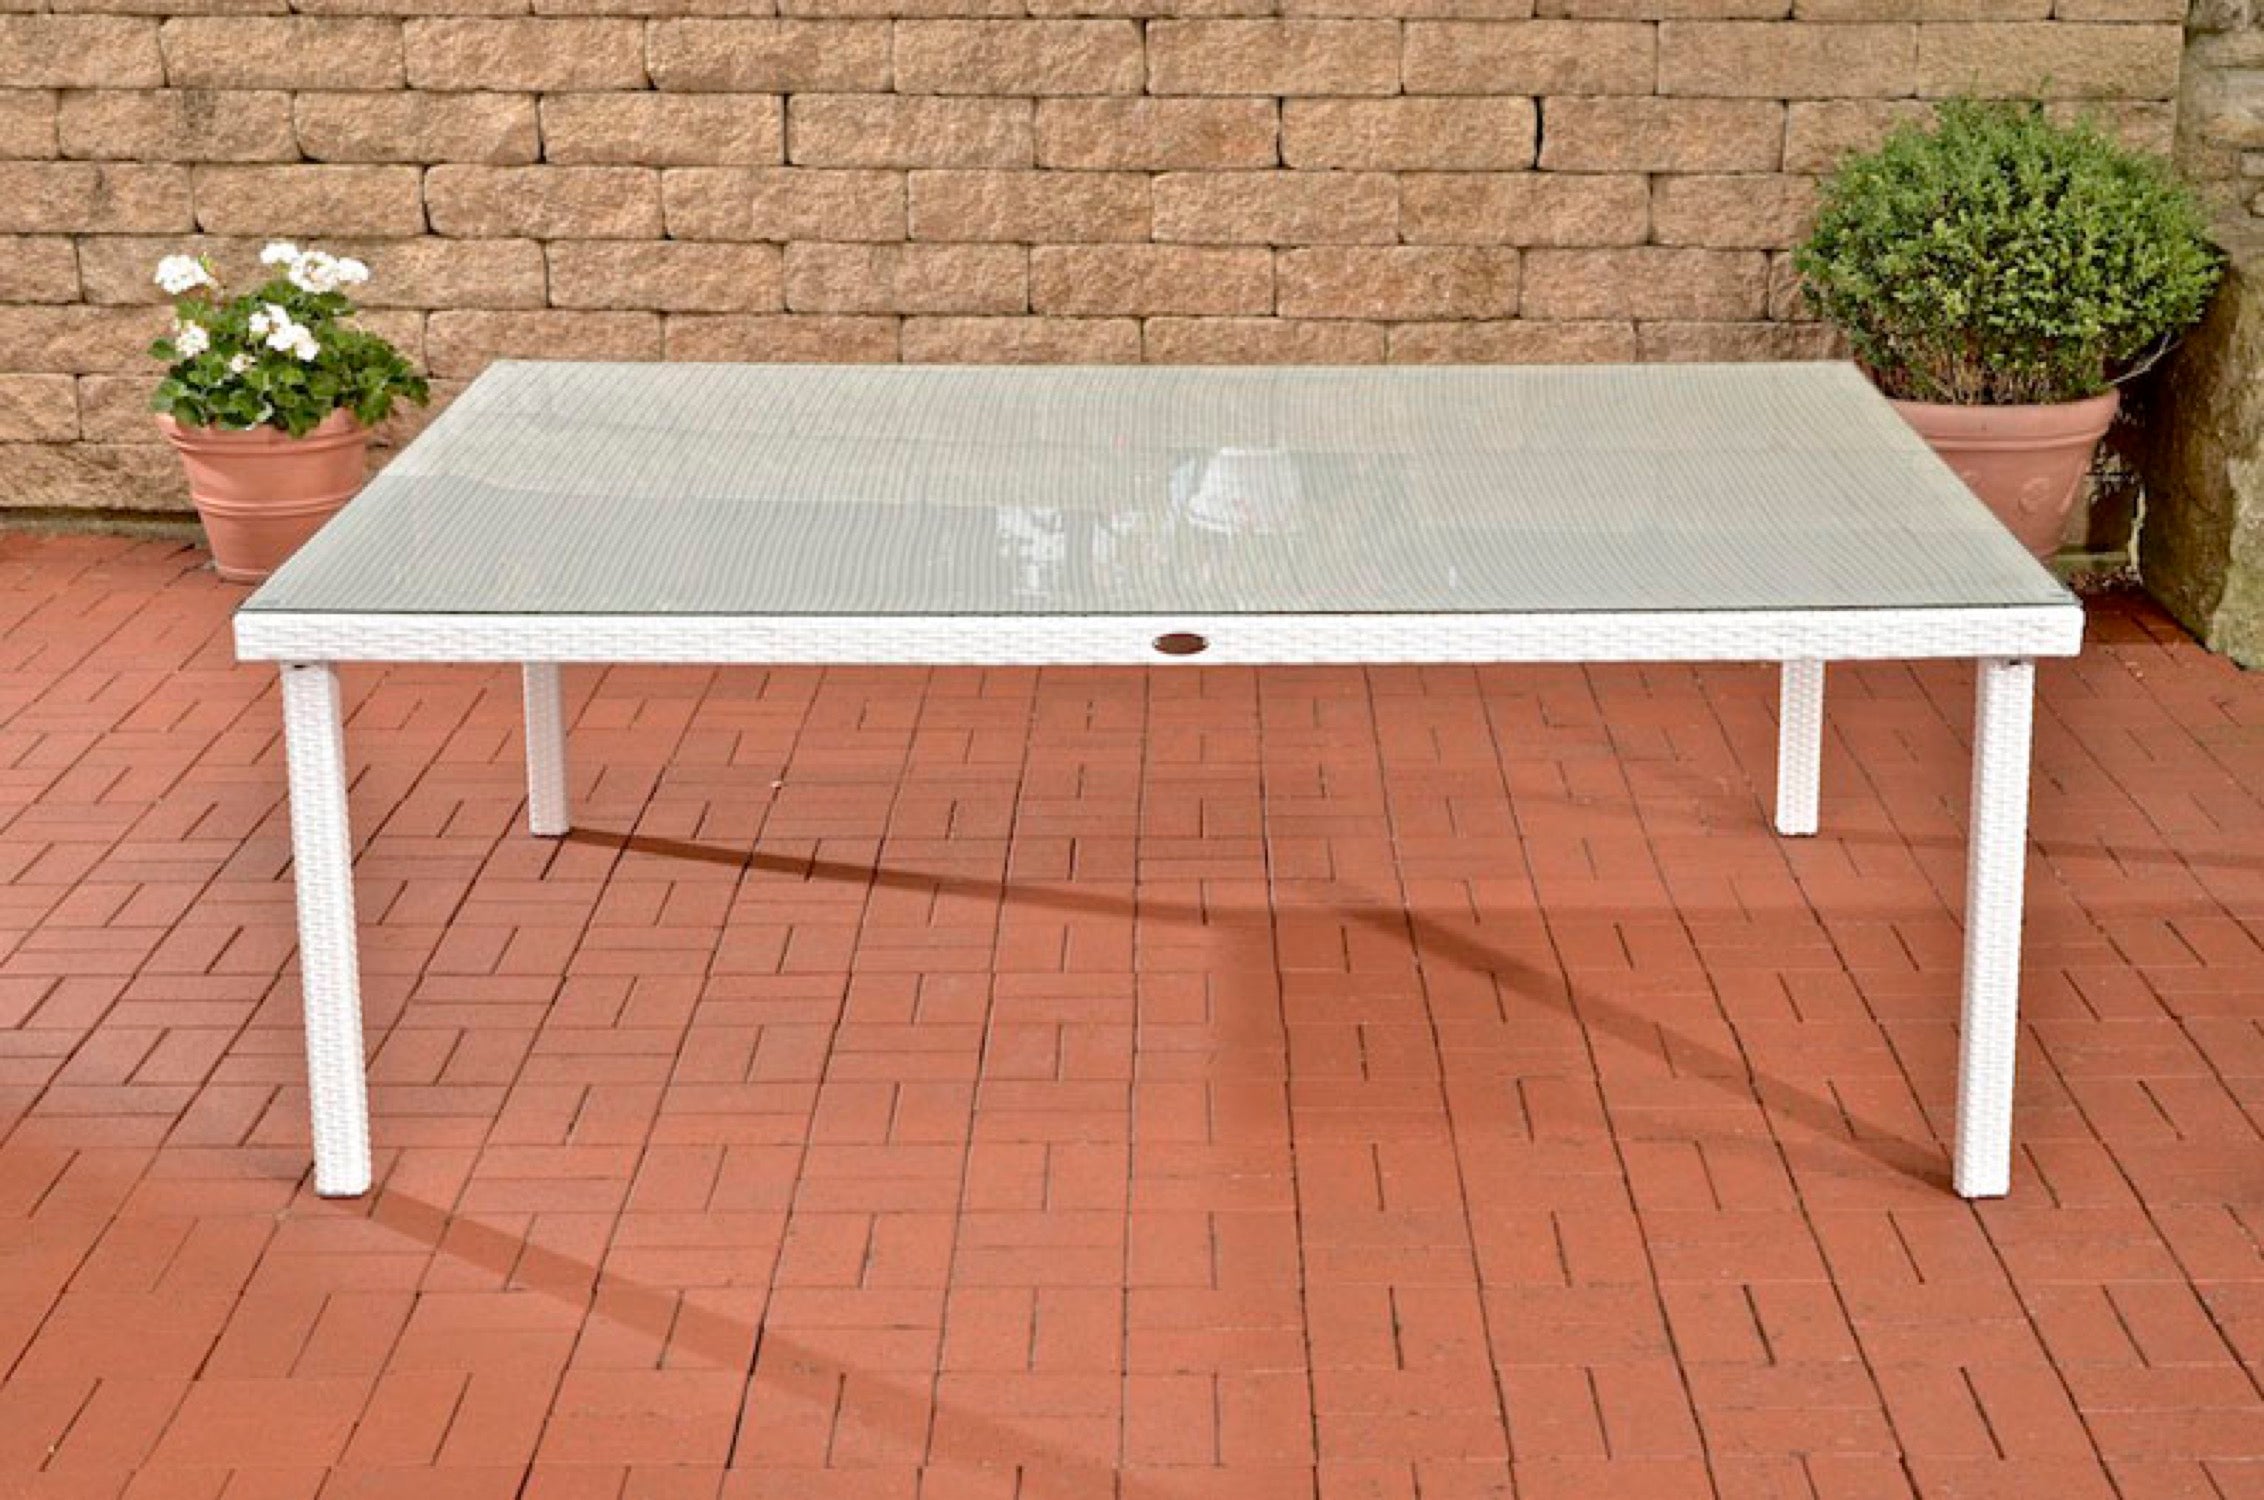 TPFGarden garden table Pizera 210x150 cm white – Traumpreisfabrik